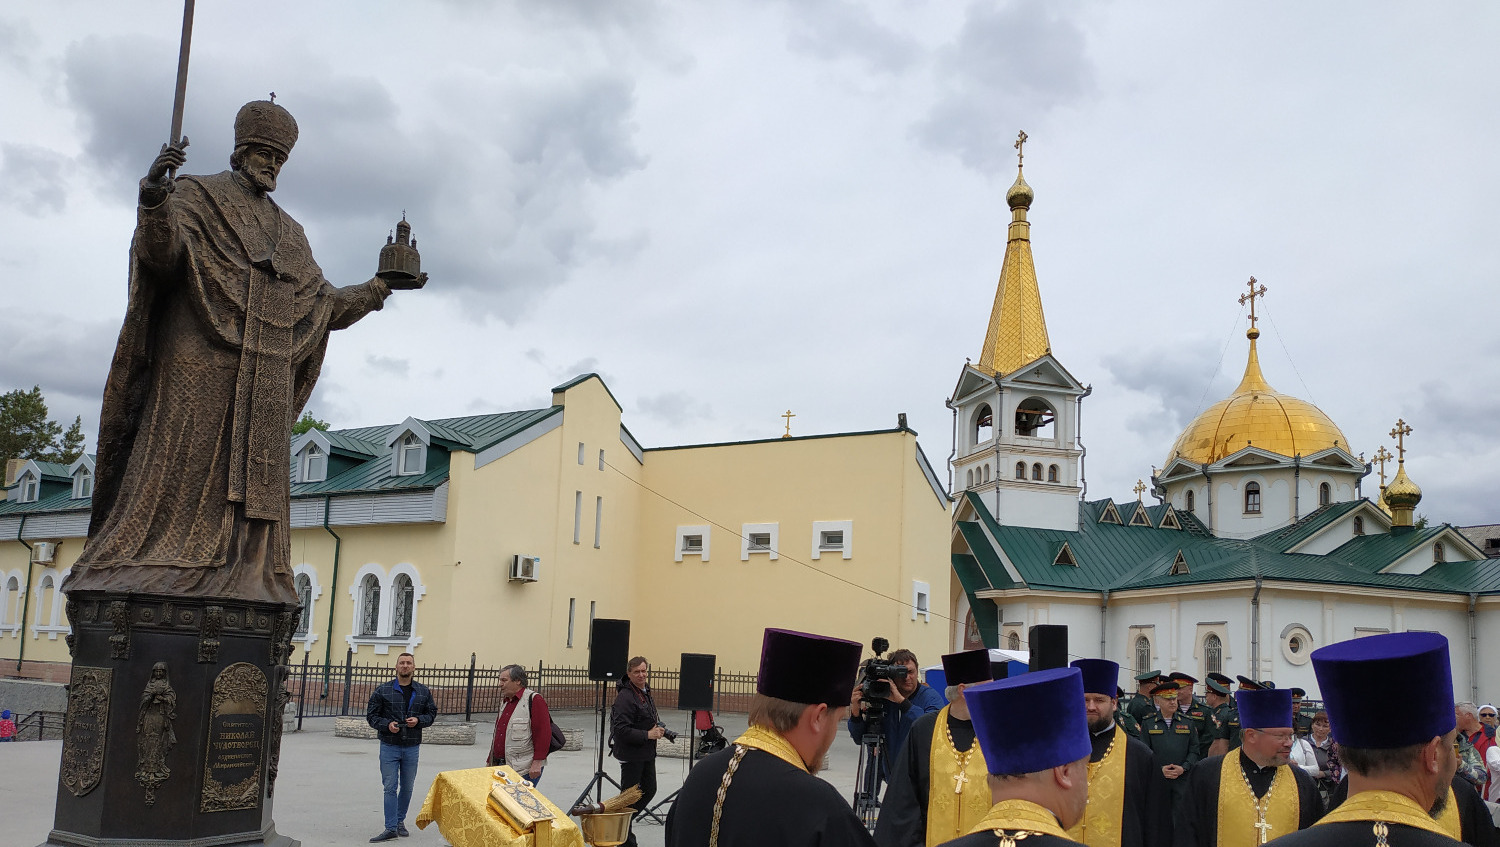 6 метровая фигура святого Николая не сразу была принята новосибирцами